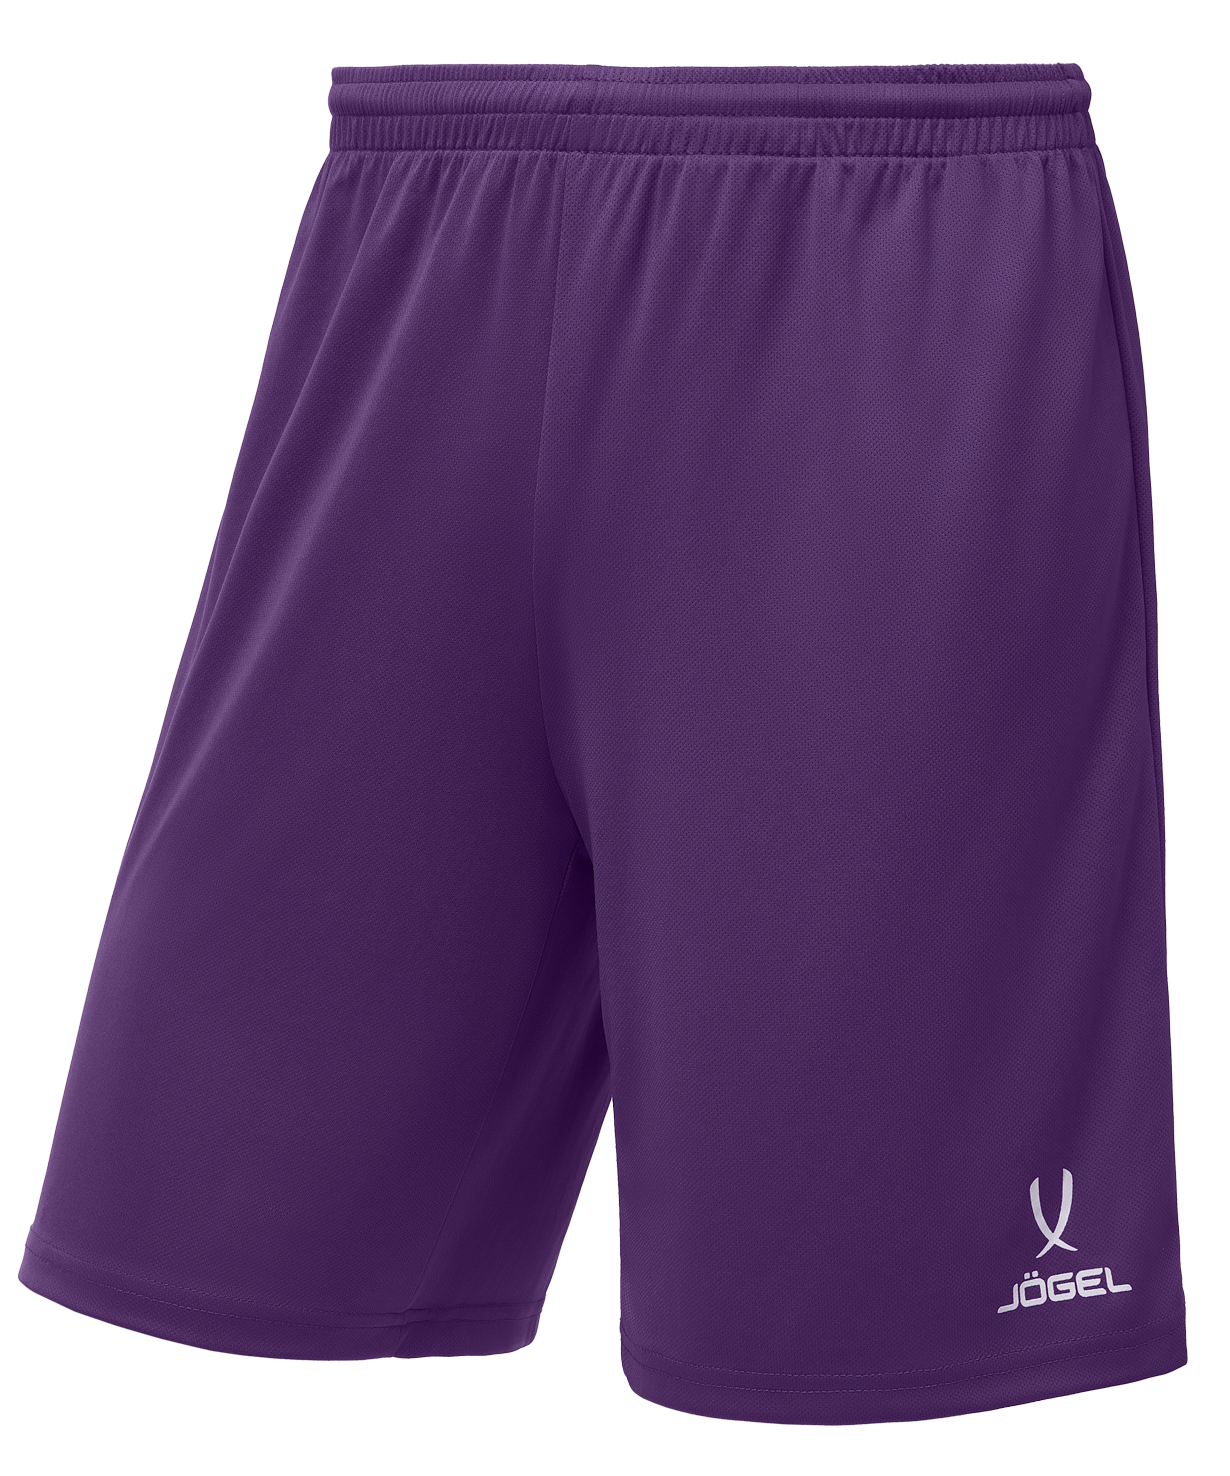 Шорты баскетбольные Jogel Camp Basic, фиолетовый, детский - YS шорты баскетбольные j gel camp basic фиолетовый